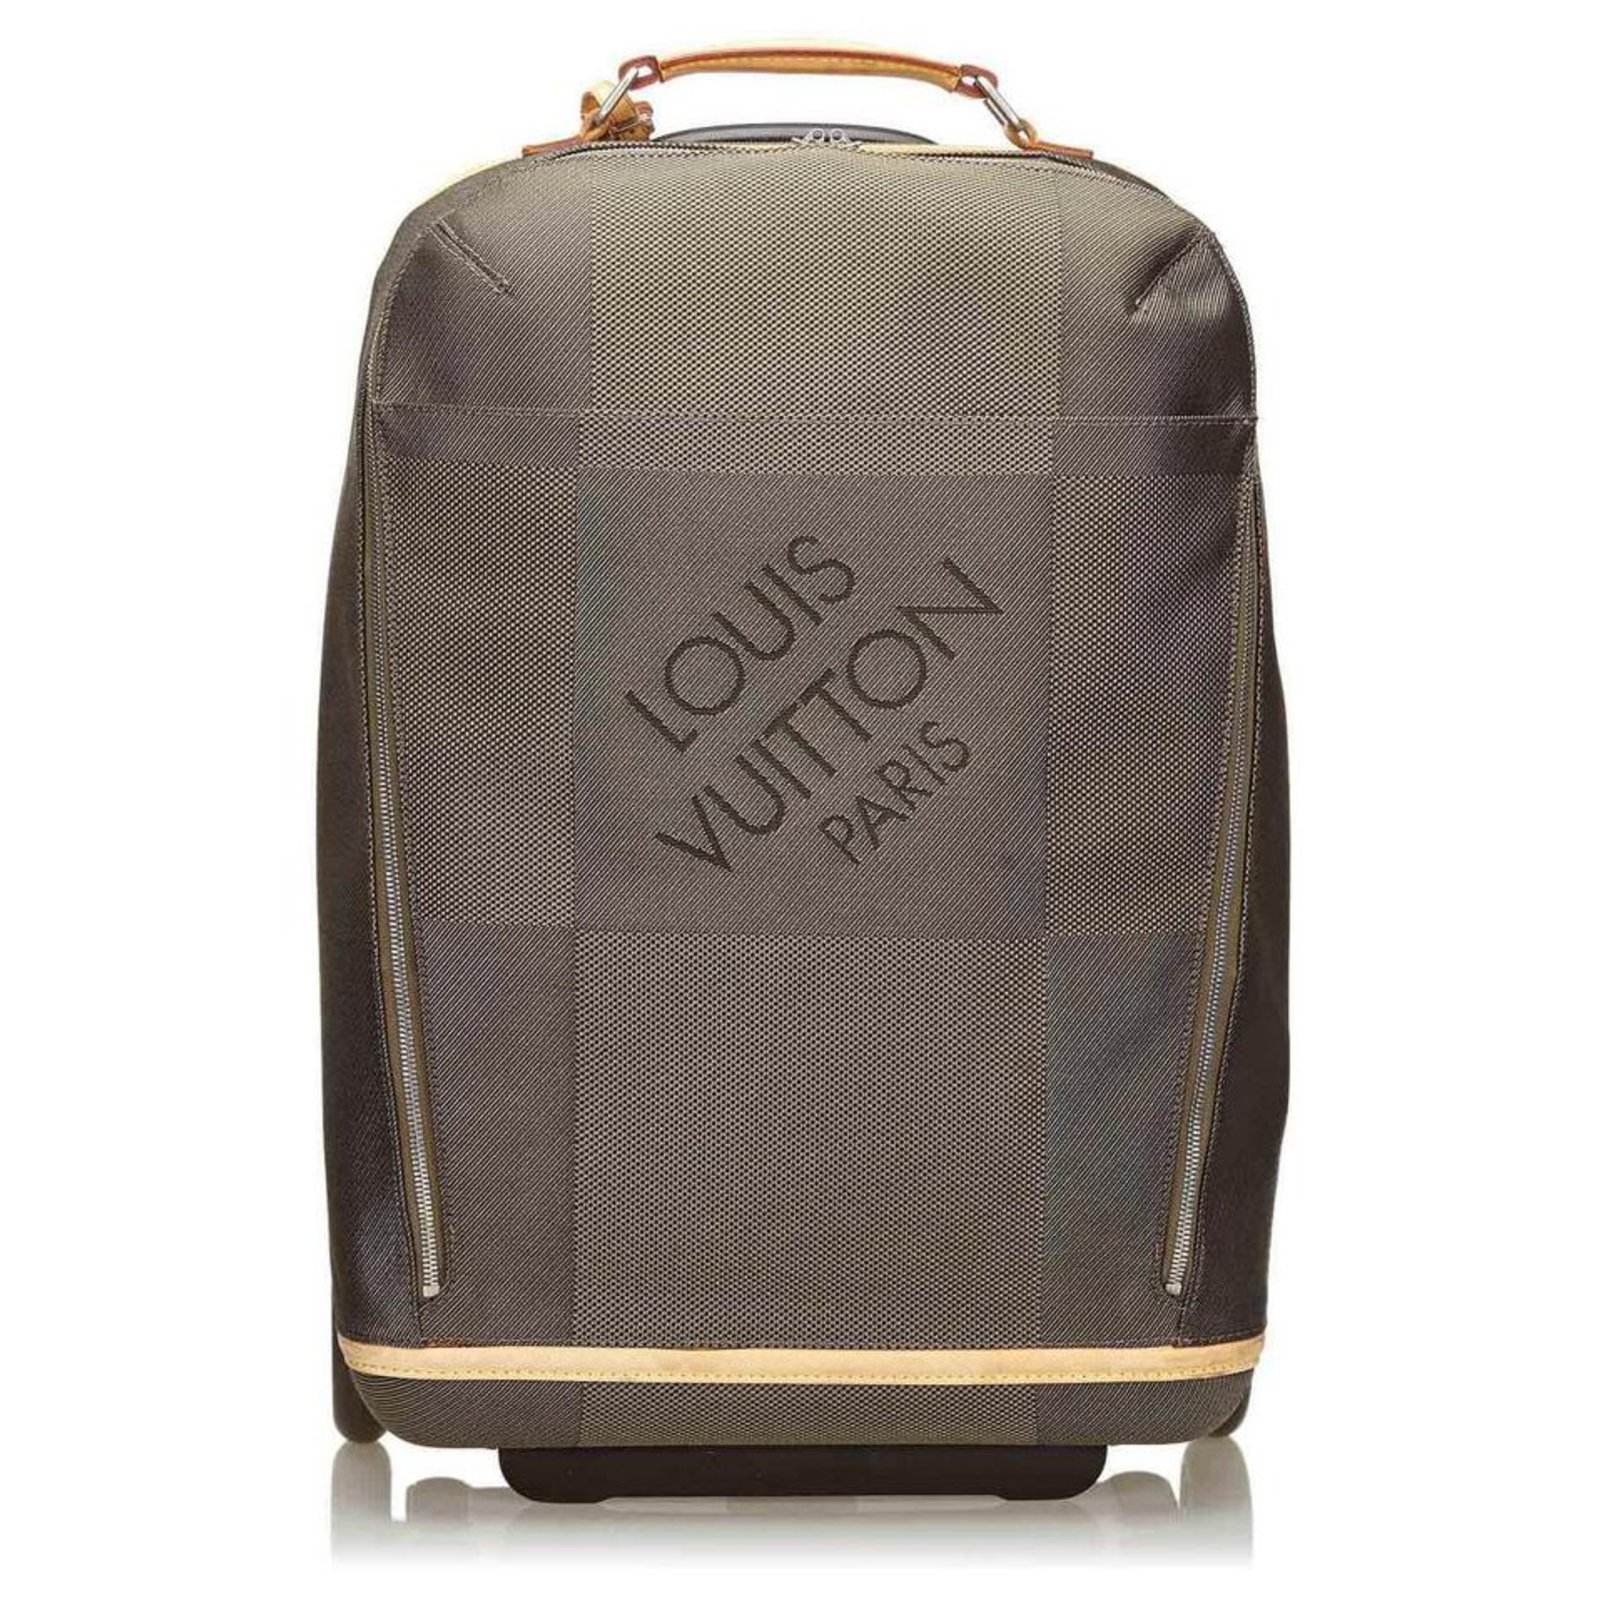 Louis Vuitton Monogram Pegase 55 Rolling Luggage Travel Bag